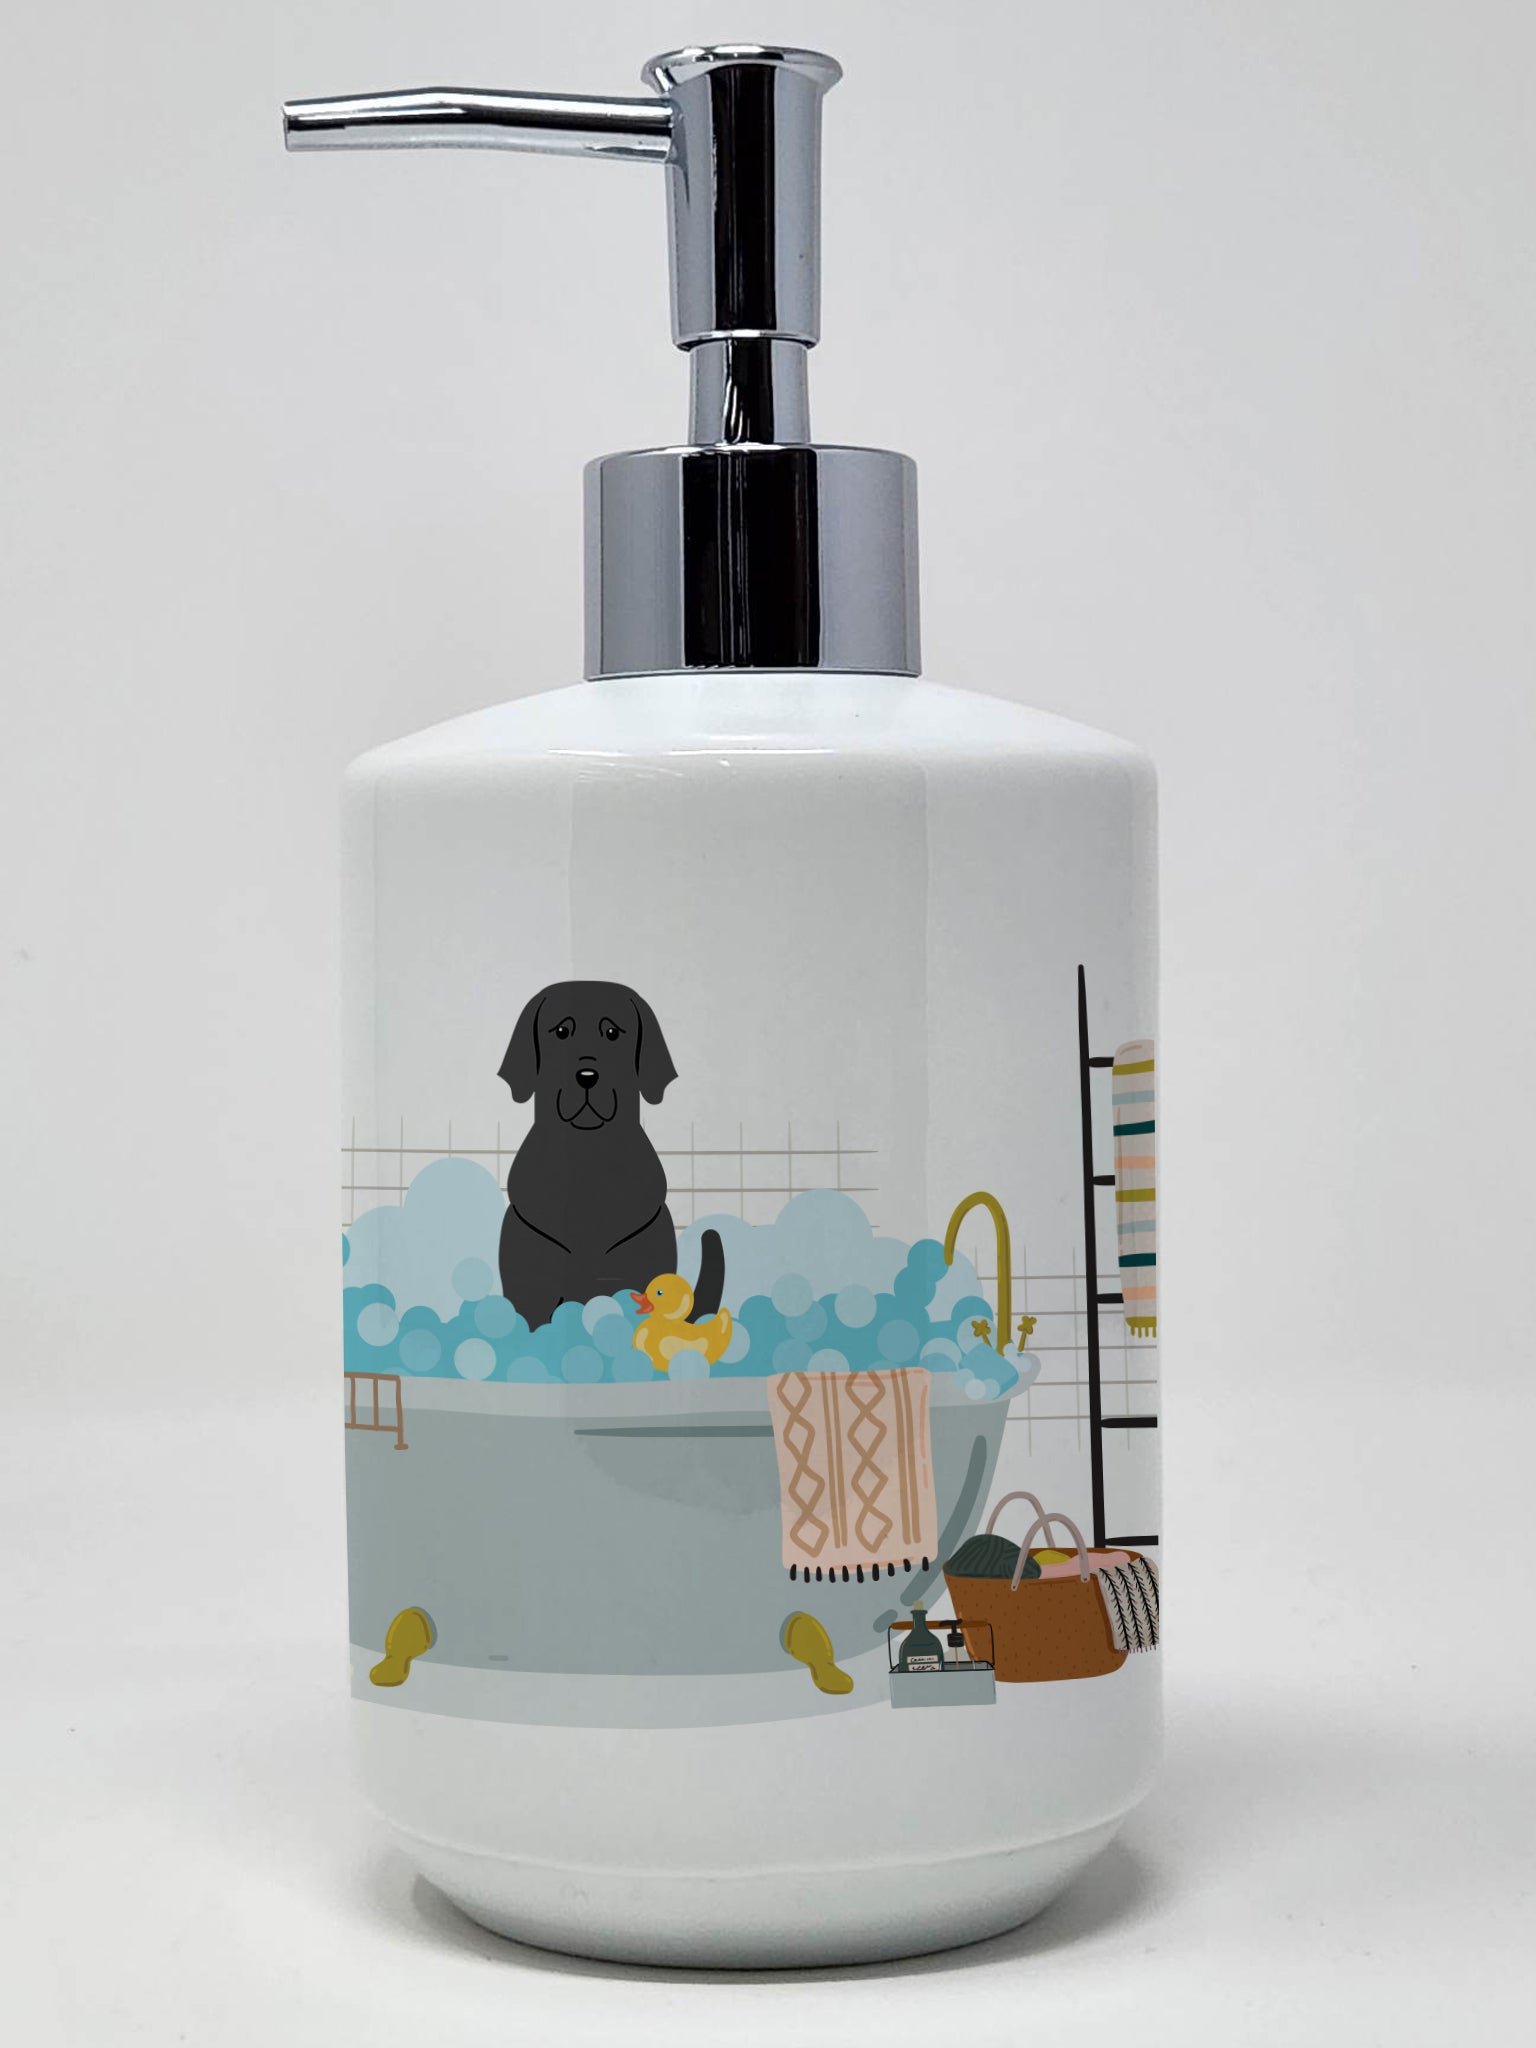 Buy this Black Labrador in Bathtub Ceramic Soap Dispenser